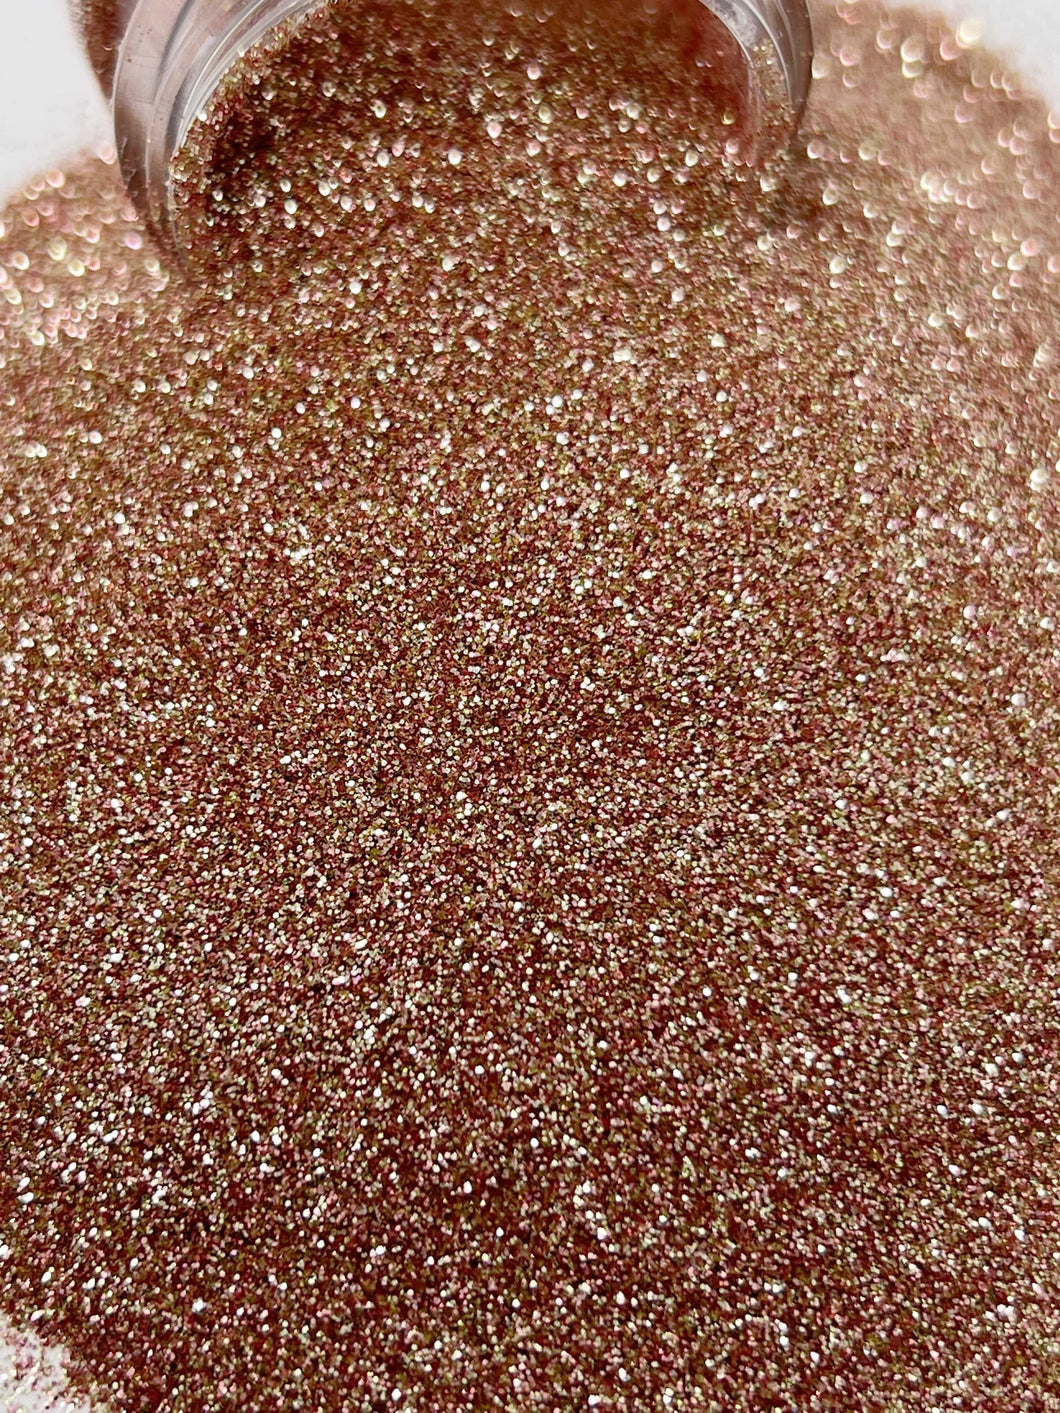 Gossip - Ultra Fine - Mixology Glitter